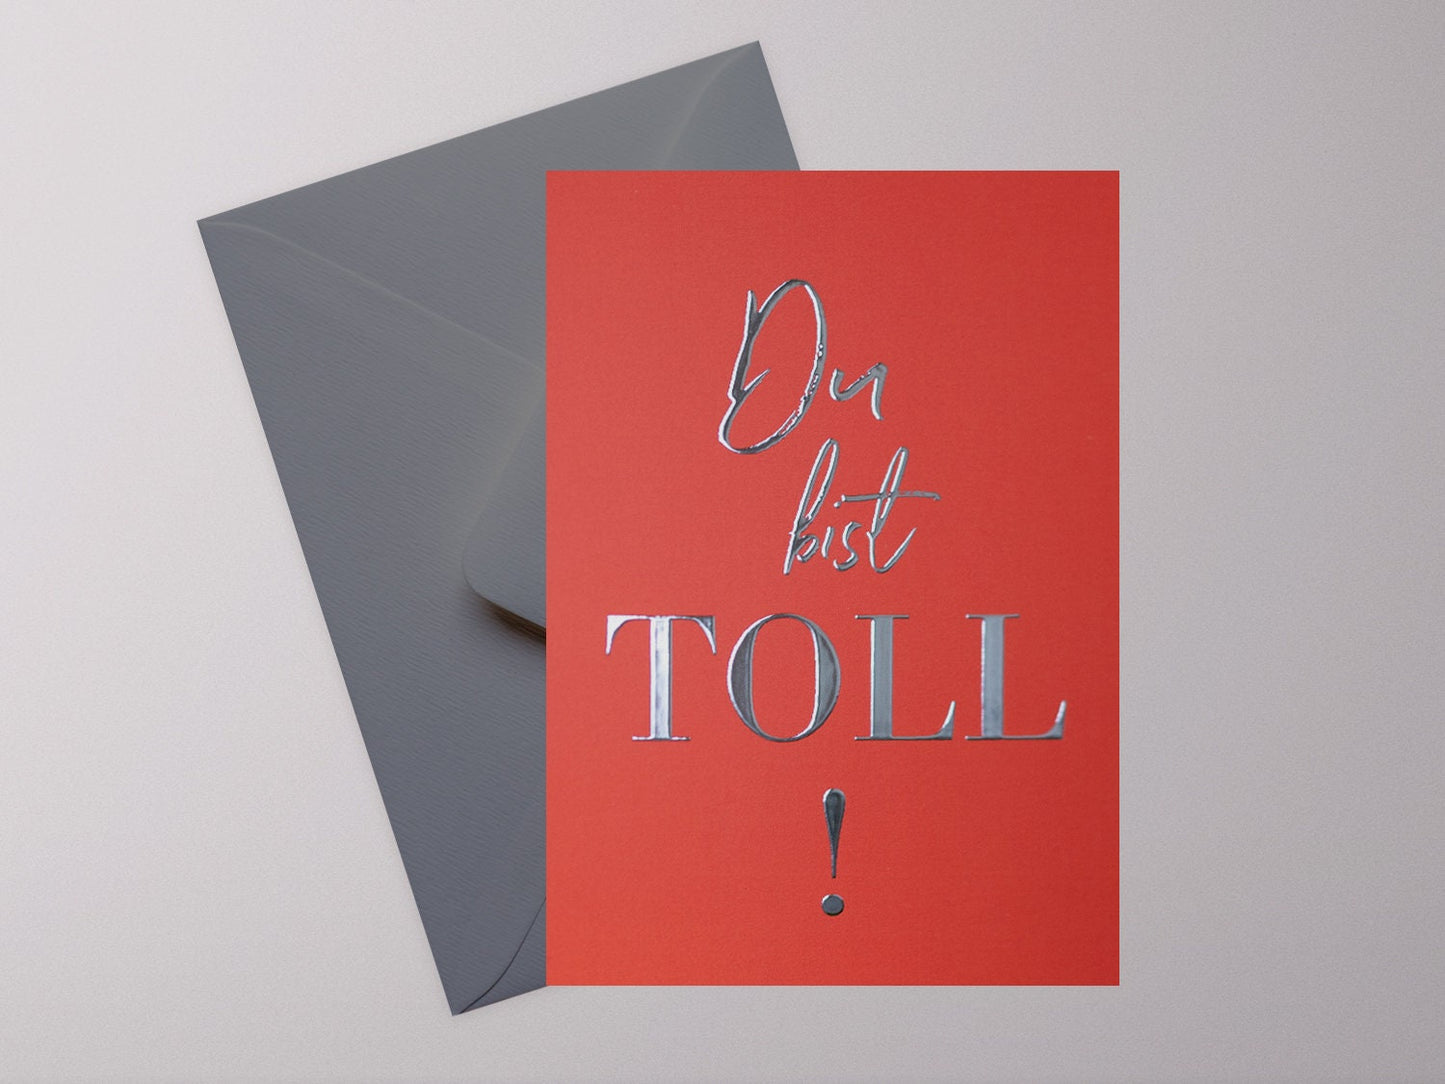 Postkarte ›DU BIST TOLL!‹, Gratulation, Liebe, Anerkennung, Heißfolienprägung in Silber, Freundschaft